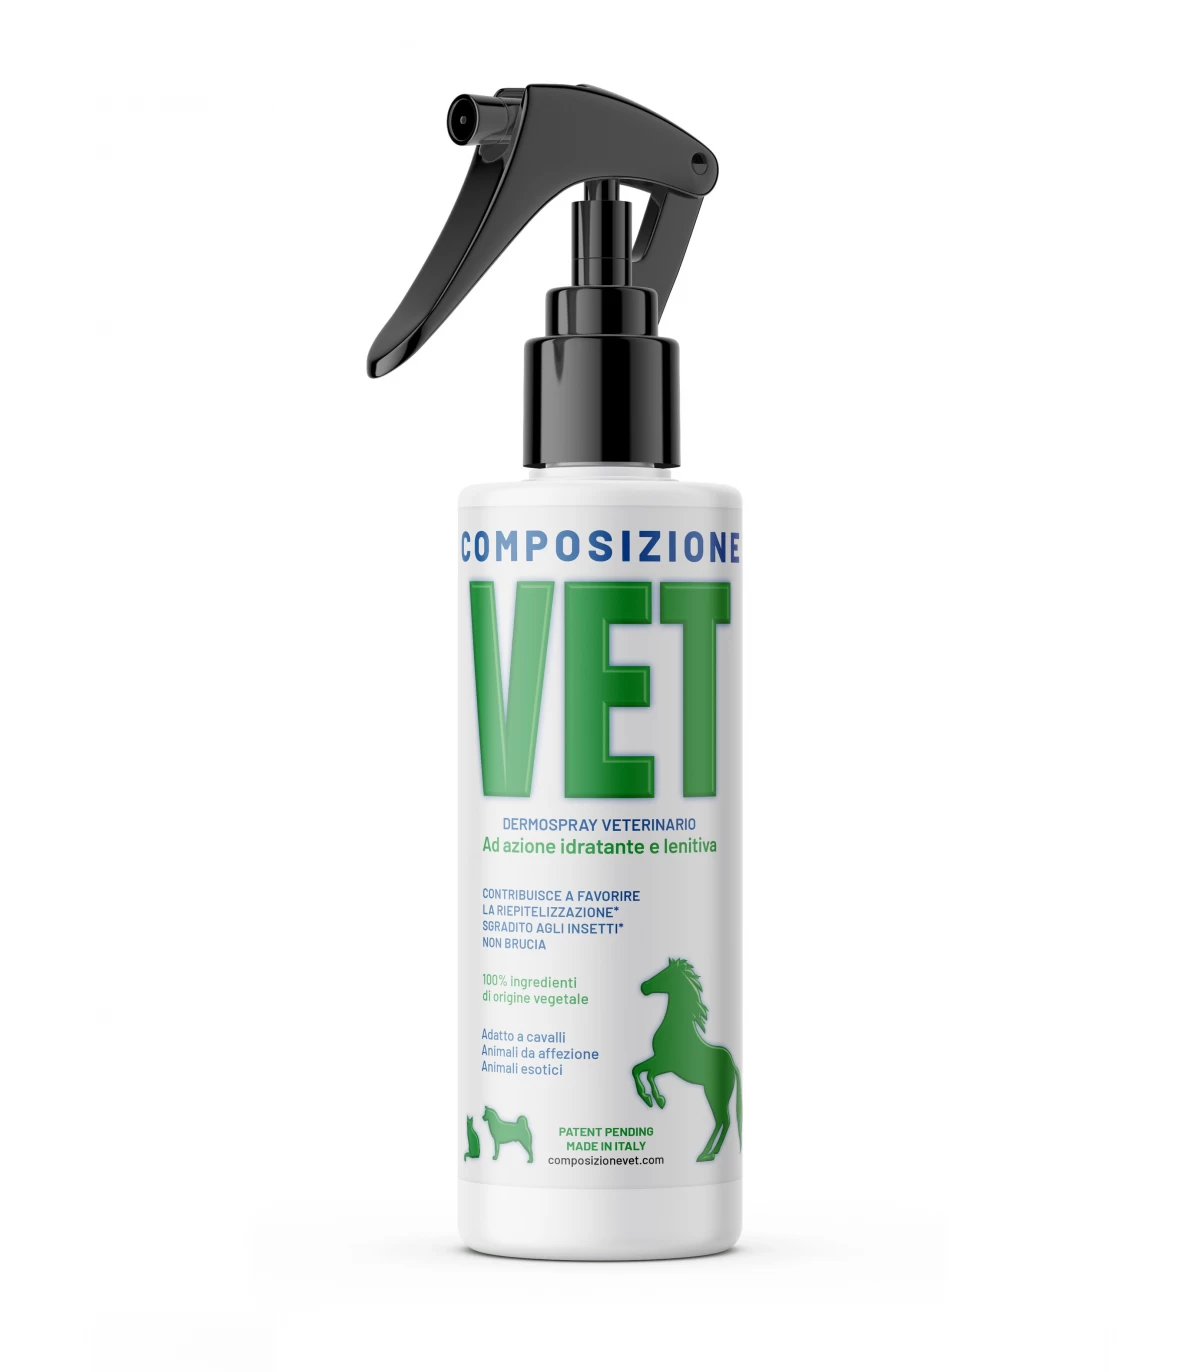 Flacone spray di composizione vet da 150 ml utile per dermatiti su cani, gatti e cavalli